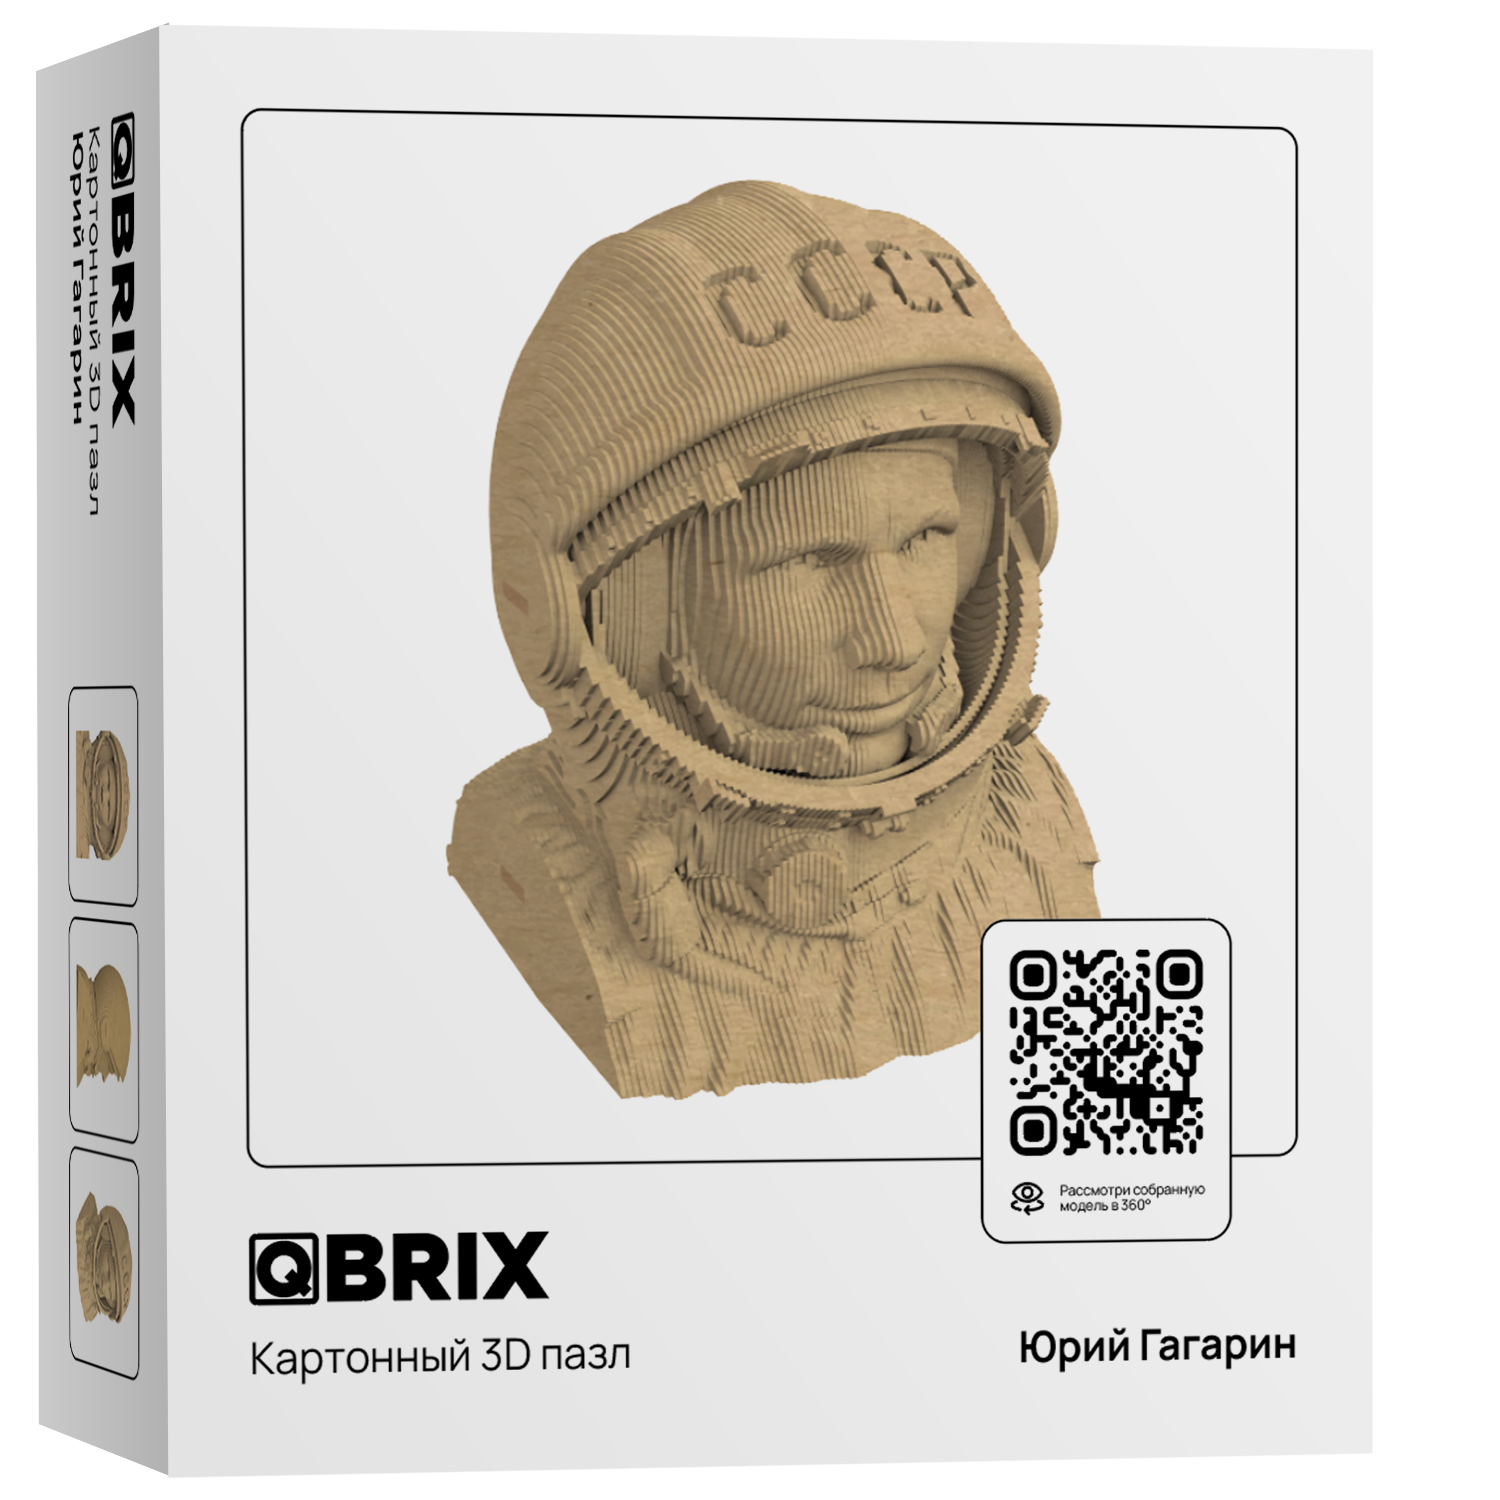 Конструктор QBRIX 3D картонный Юрий Гагарин 20008 20008 - фото 1